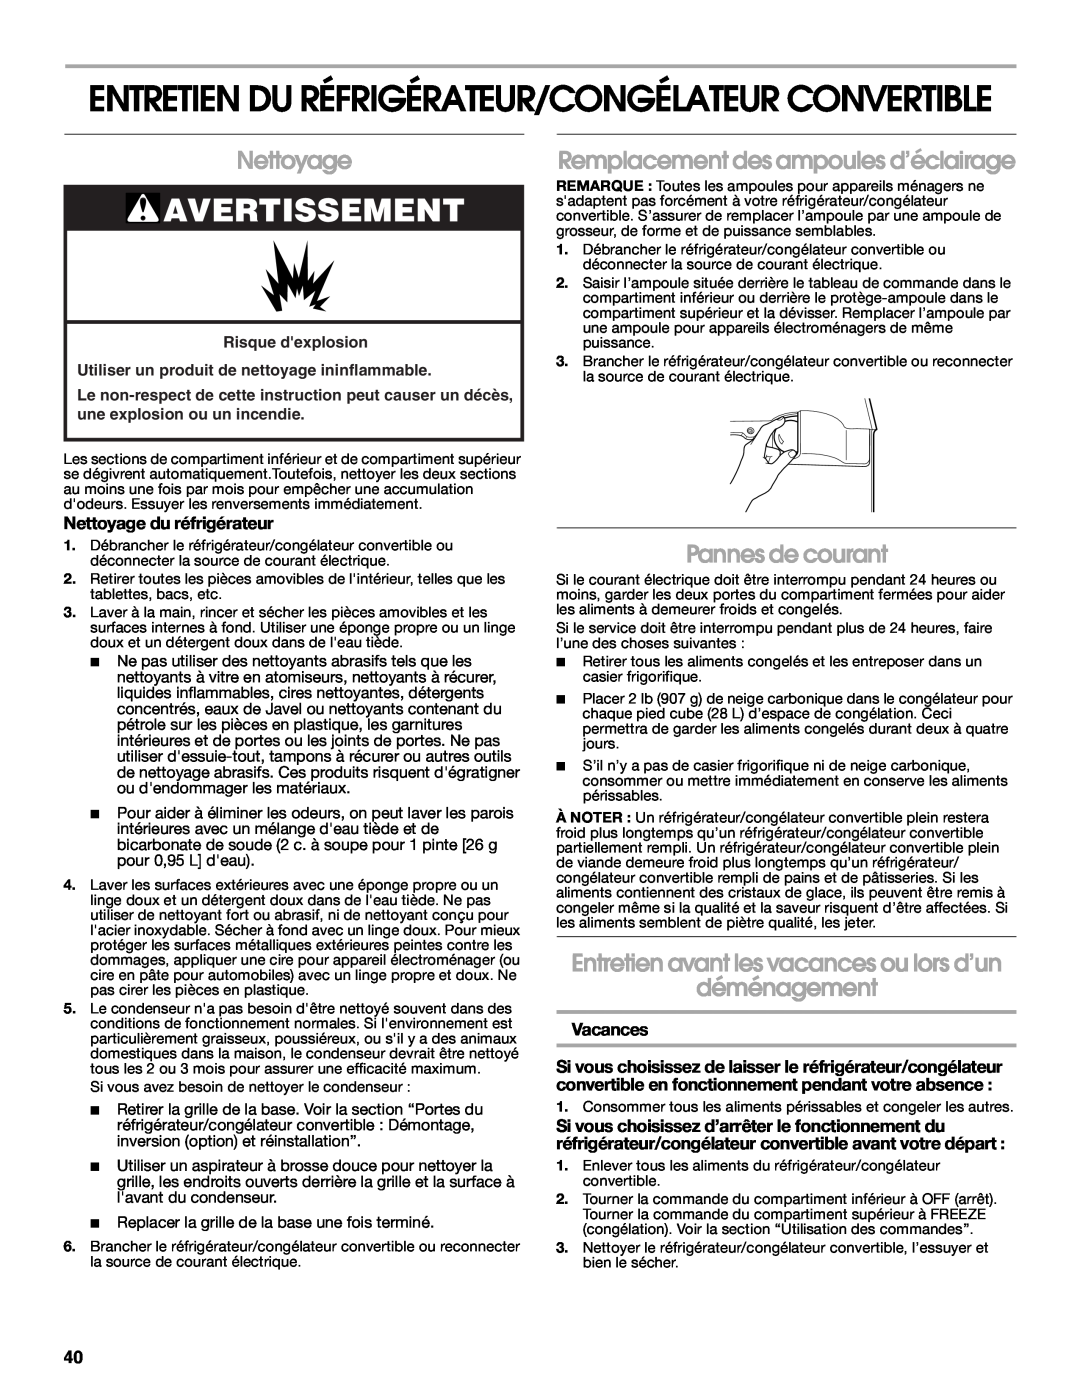 Whirlpool GAFZ21XXMK00 manual Entretien Du Réfrigérateur/Congélateur Convertible, Nettoyage, Pannes de courant, Vacances 